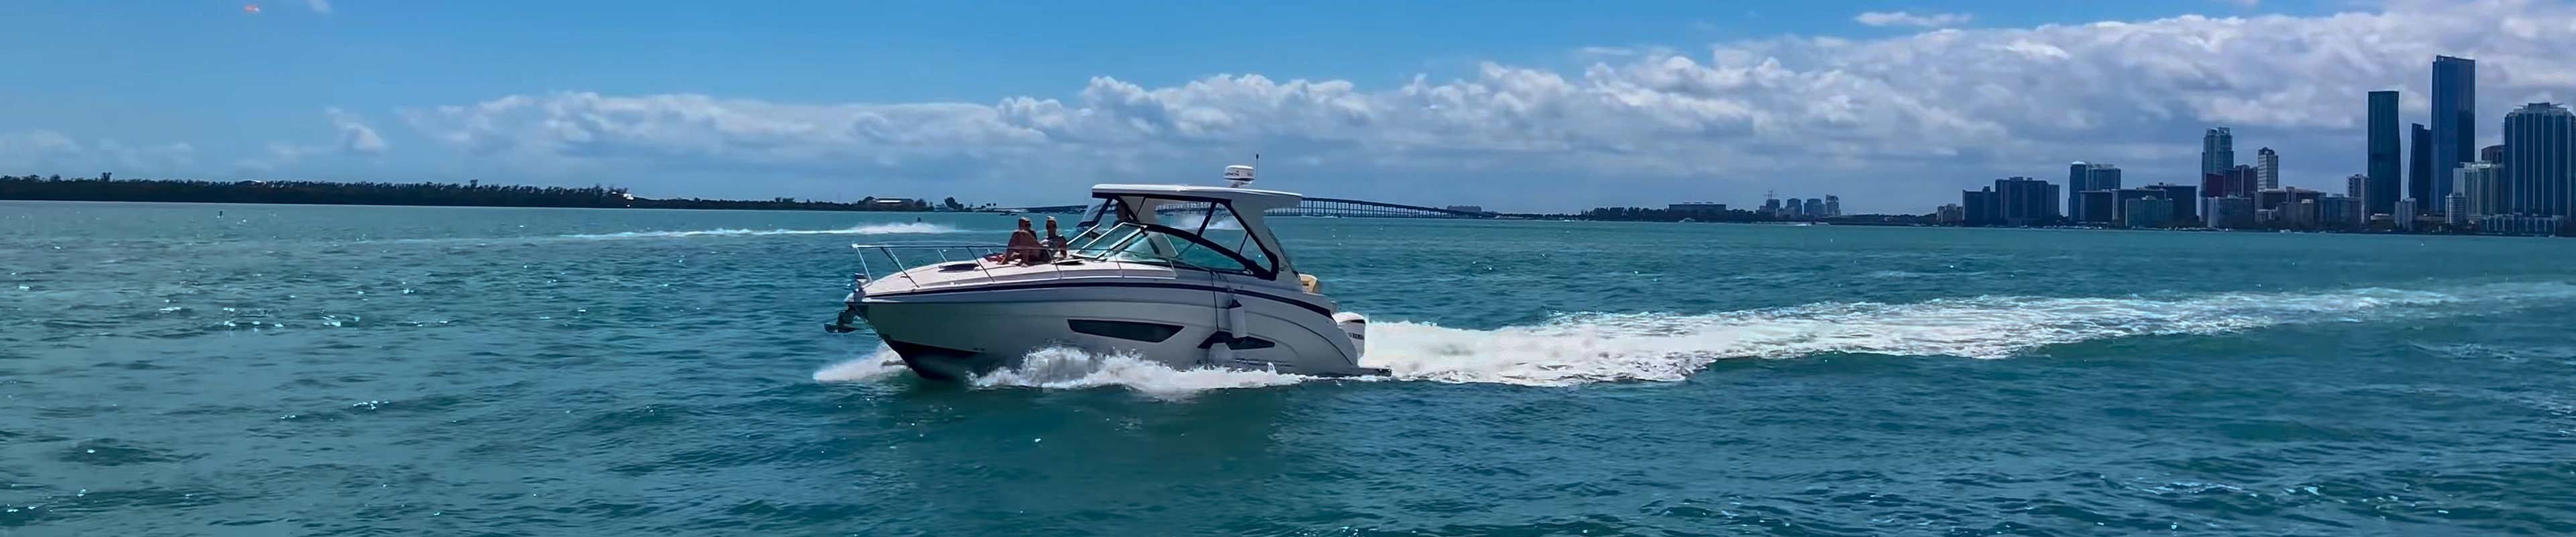 Speed Boat on Open Water